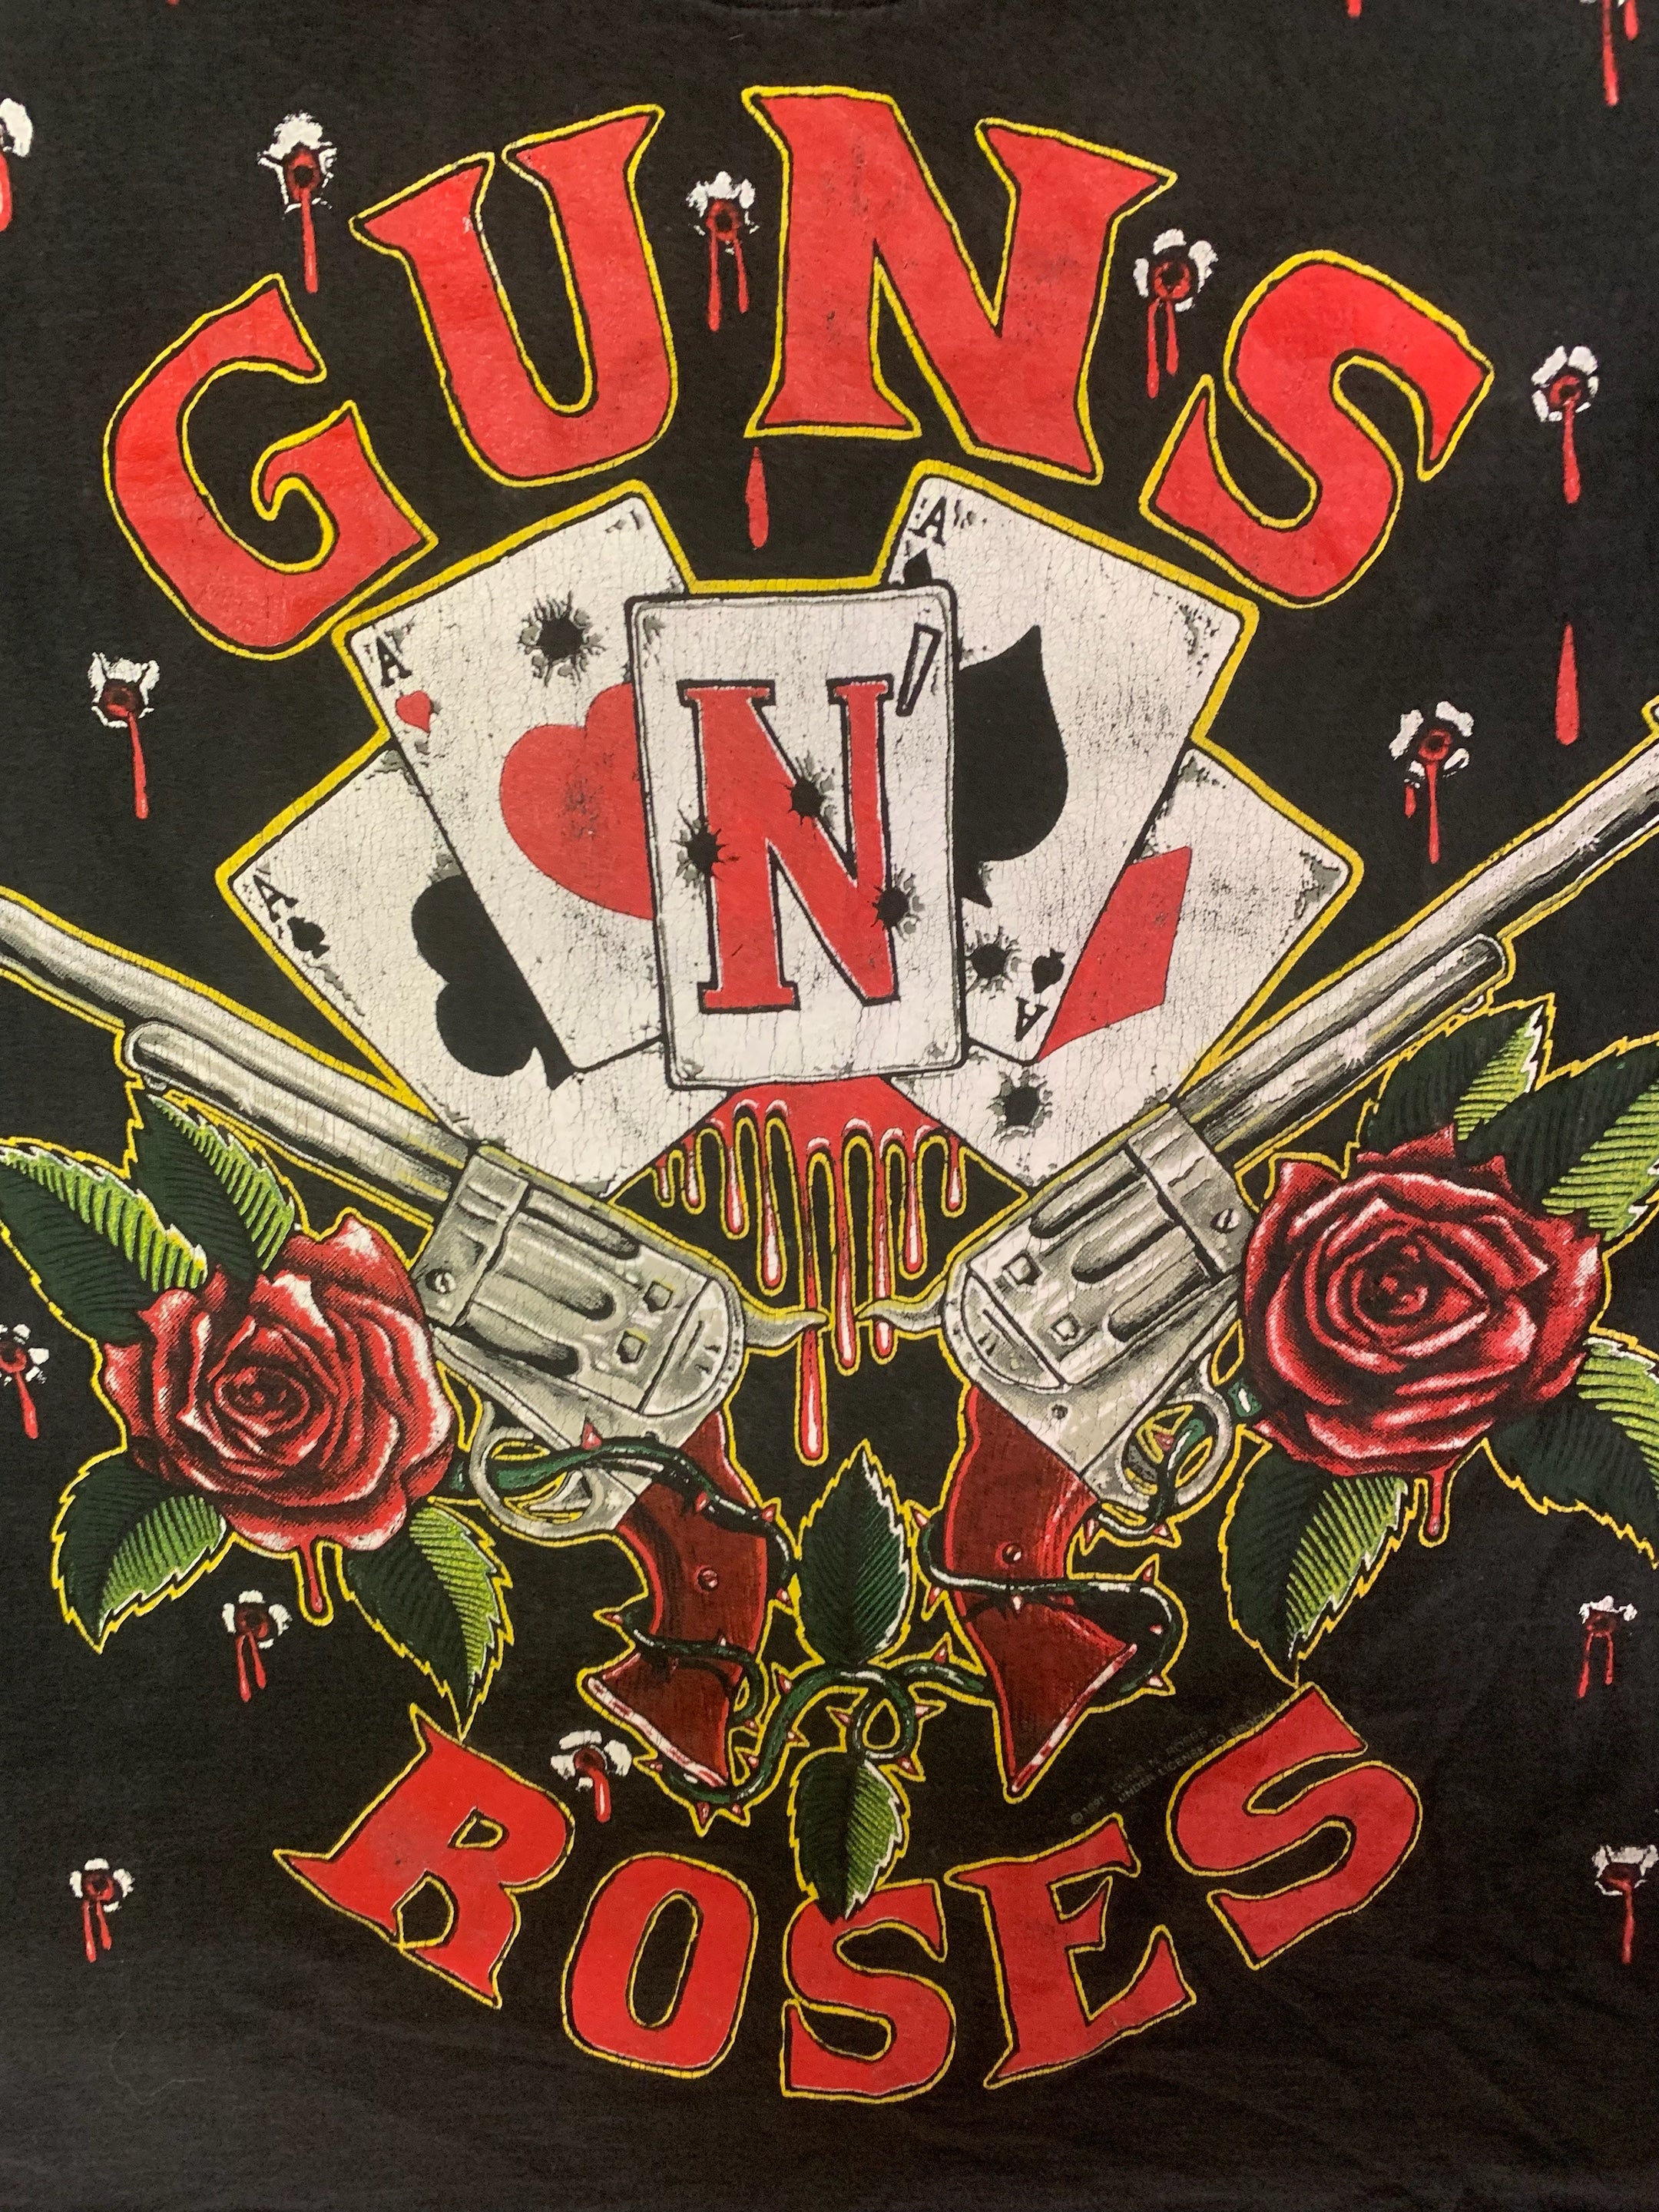 T-shirt année 90 Guns n' Roses "couture simple"